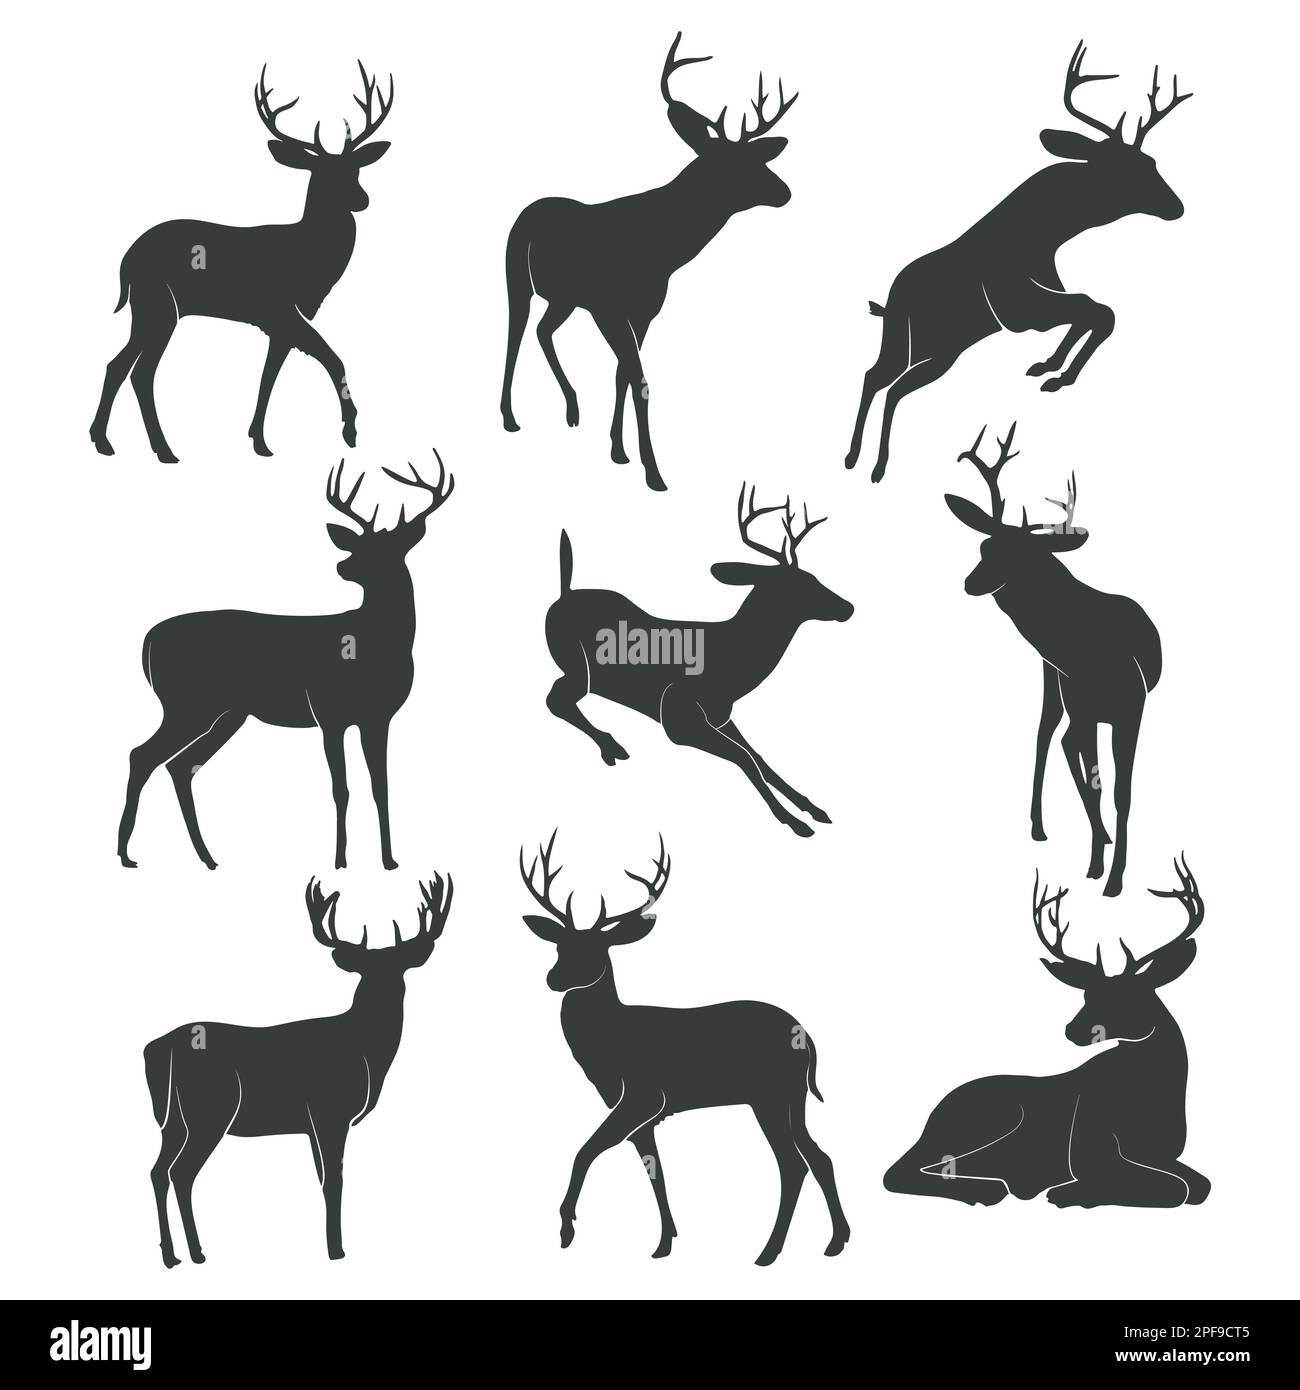 Deer silhouette collection, Deer logo vector Stock Vector